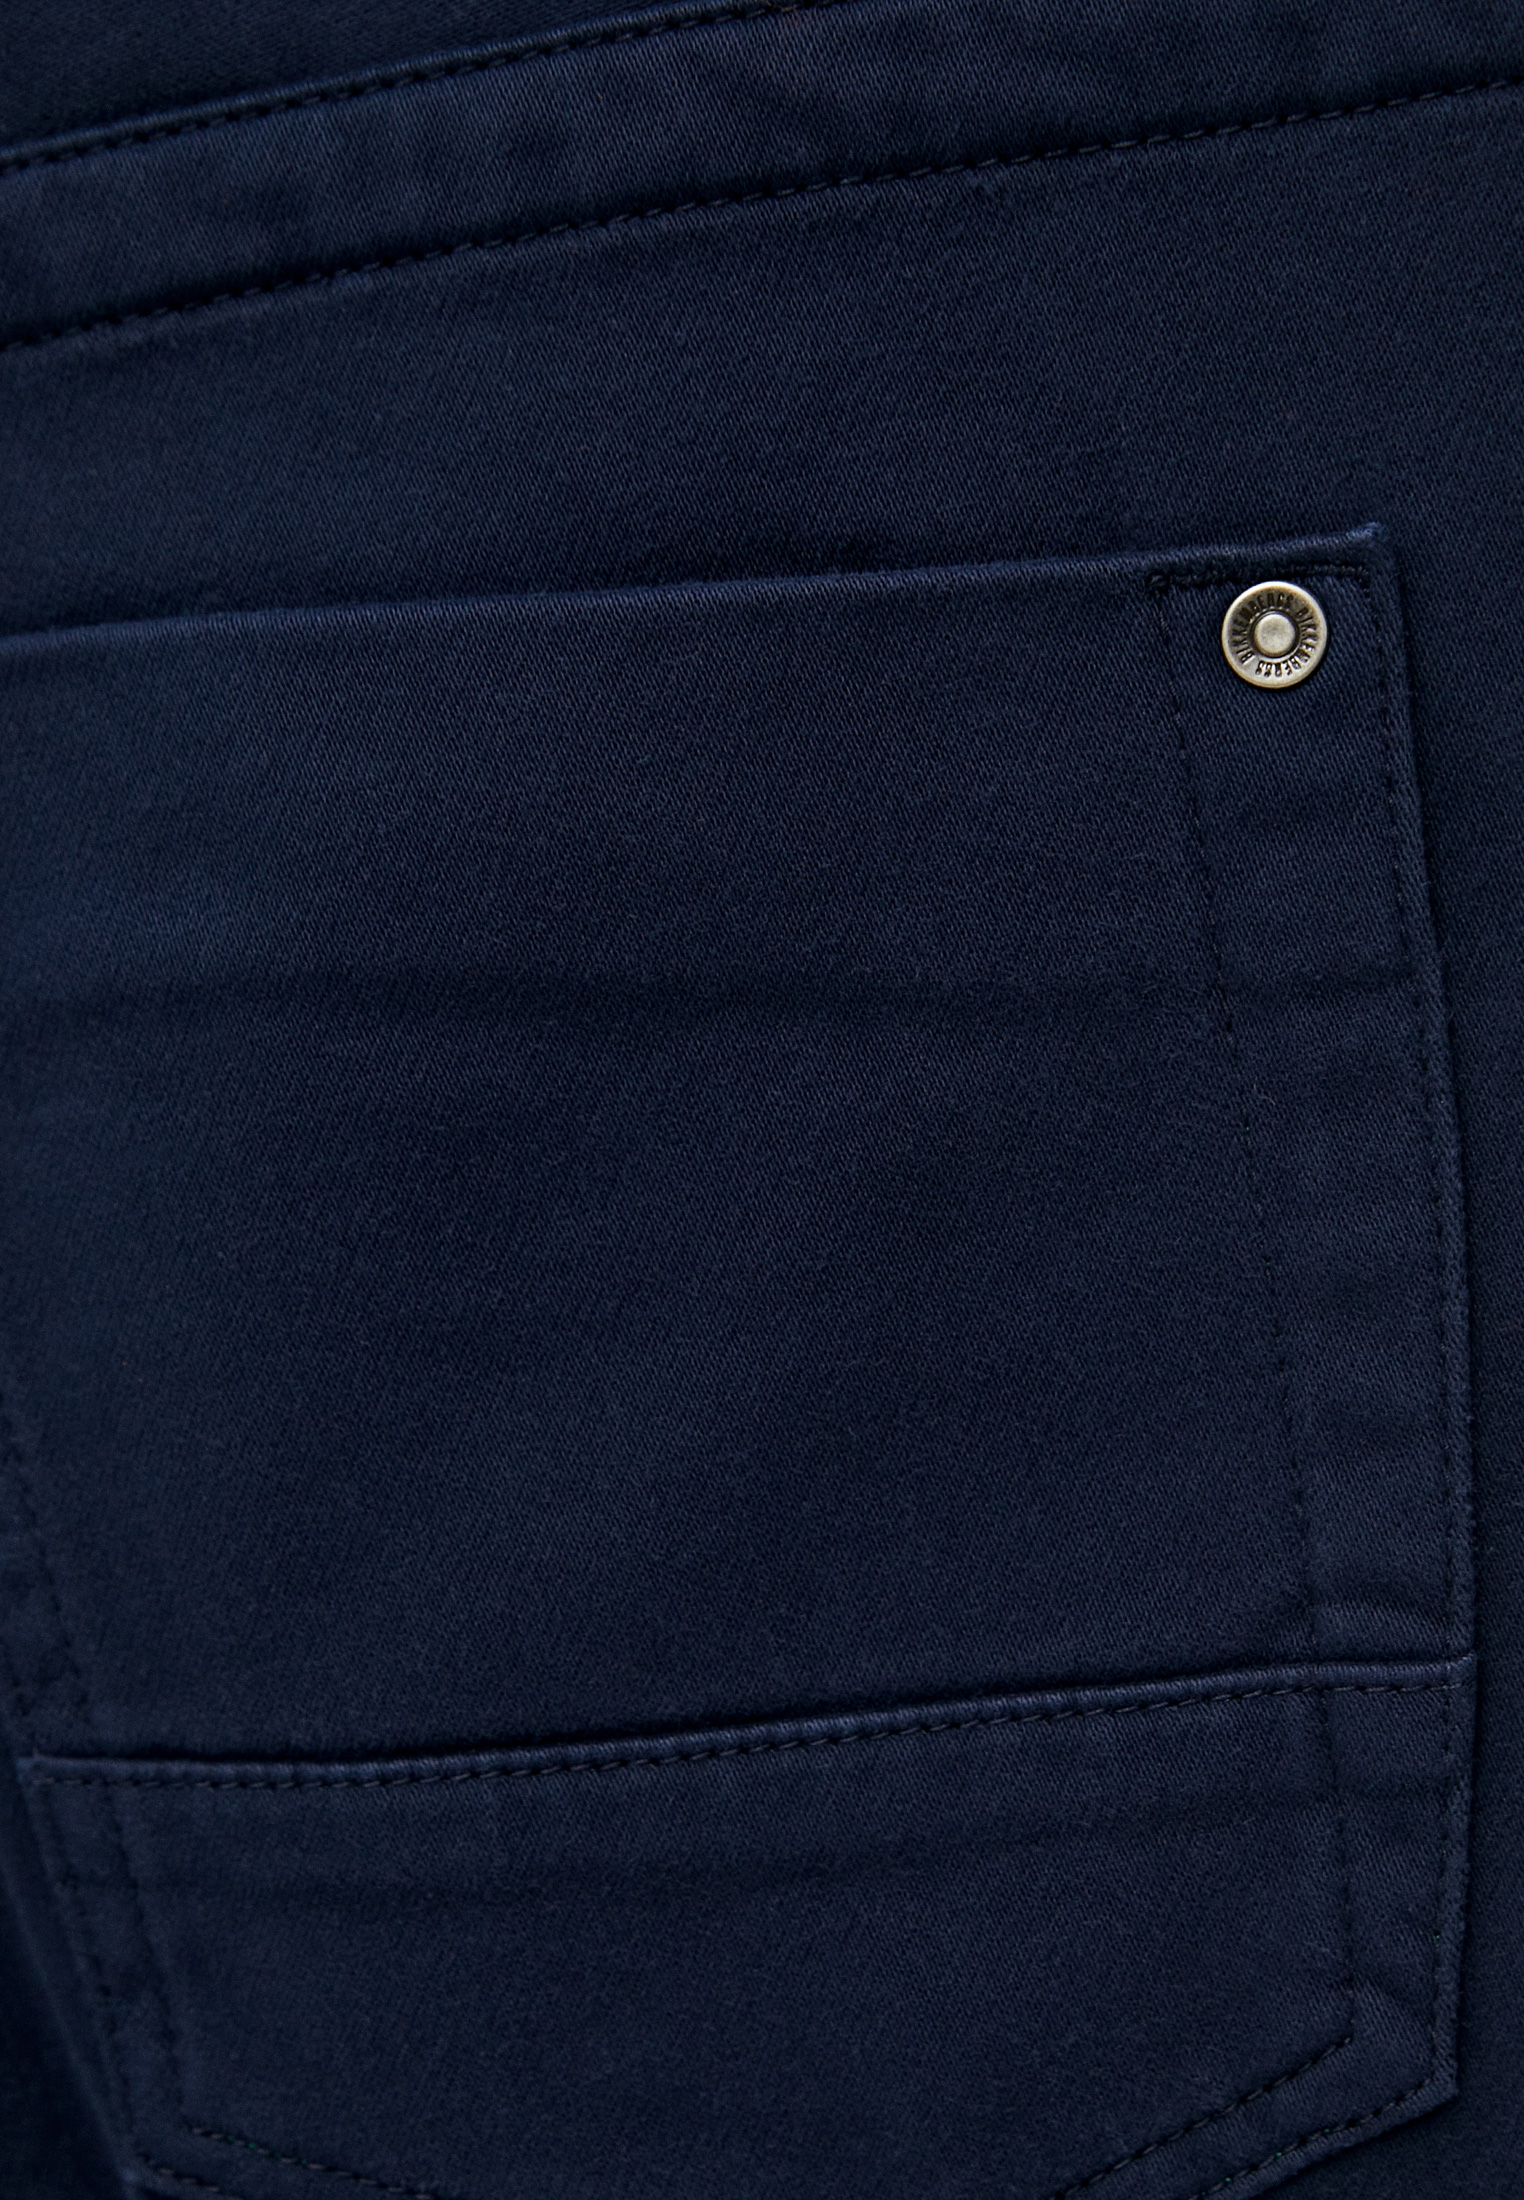 Мужские повседневные брюки Bikkembergs (Биккембергс) C Q 102 14 S 3336: изображение 5